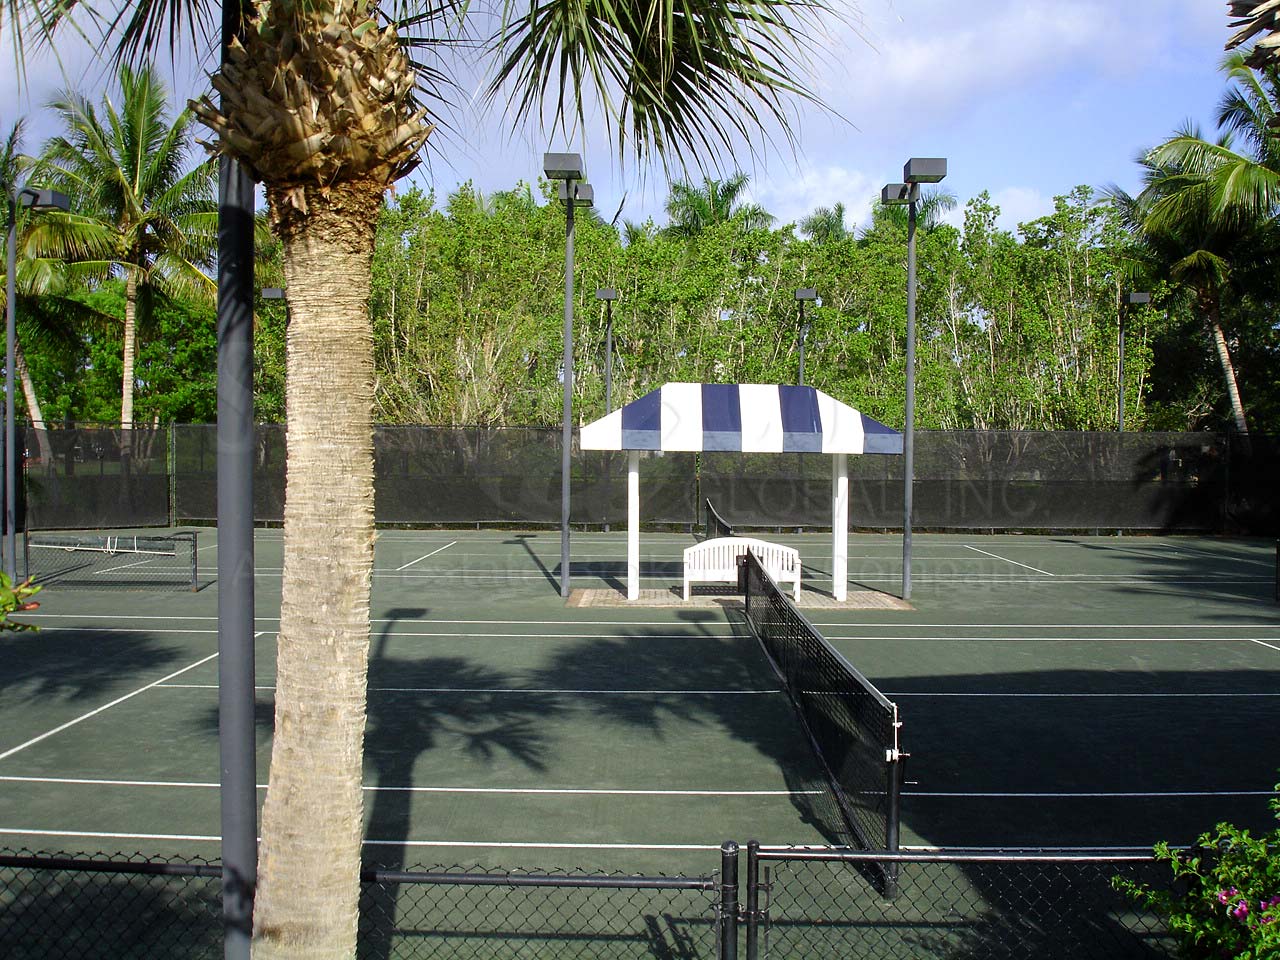 TIBURON Ritz Carlton Tennis Courts